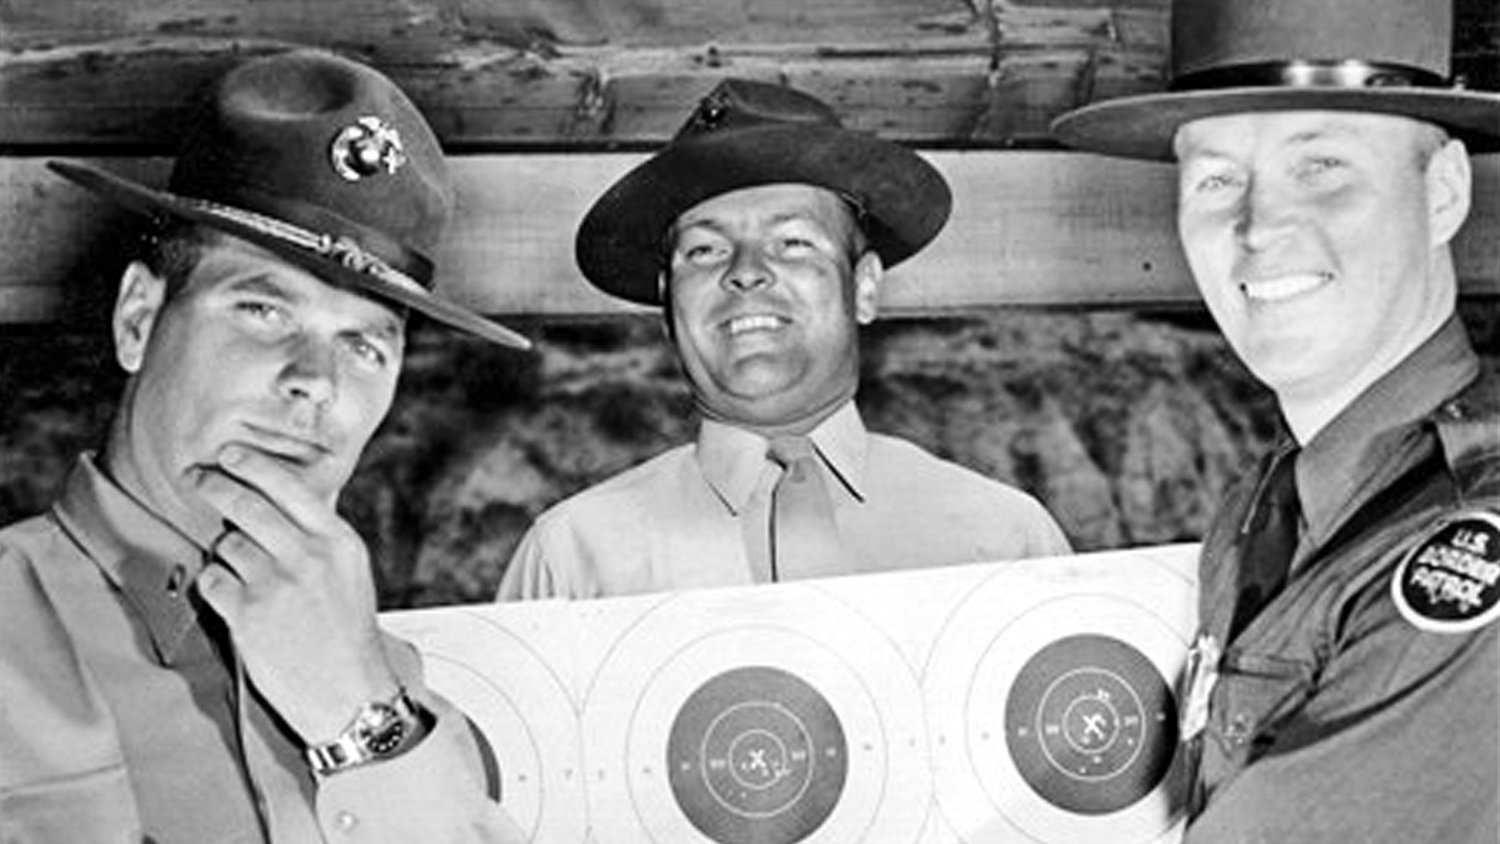 Elmer Hilden examines a Bullseye target in 1957.